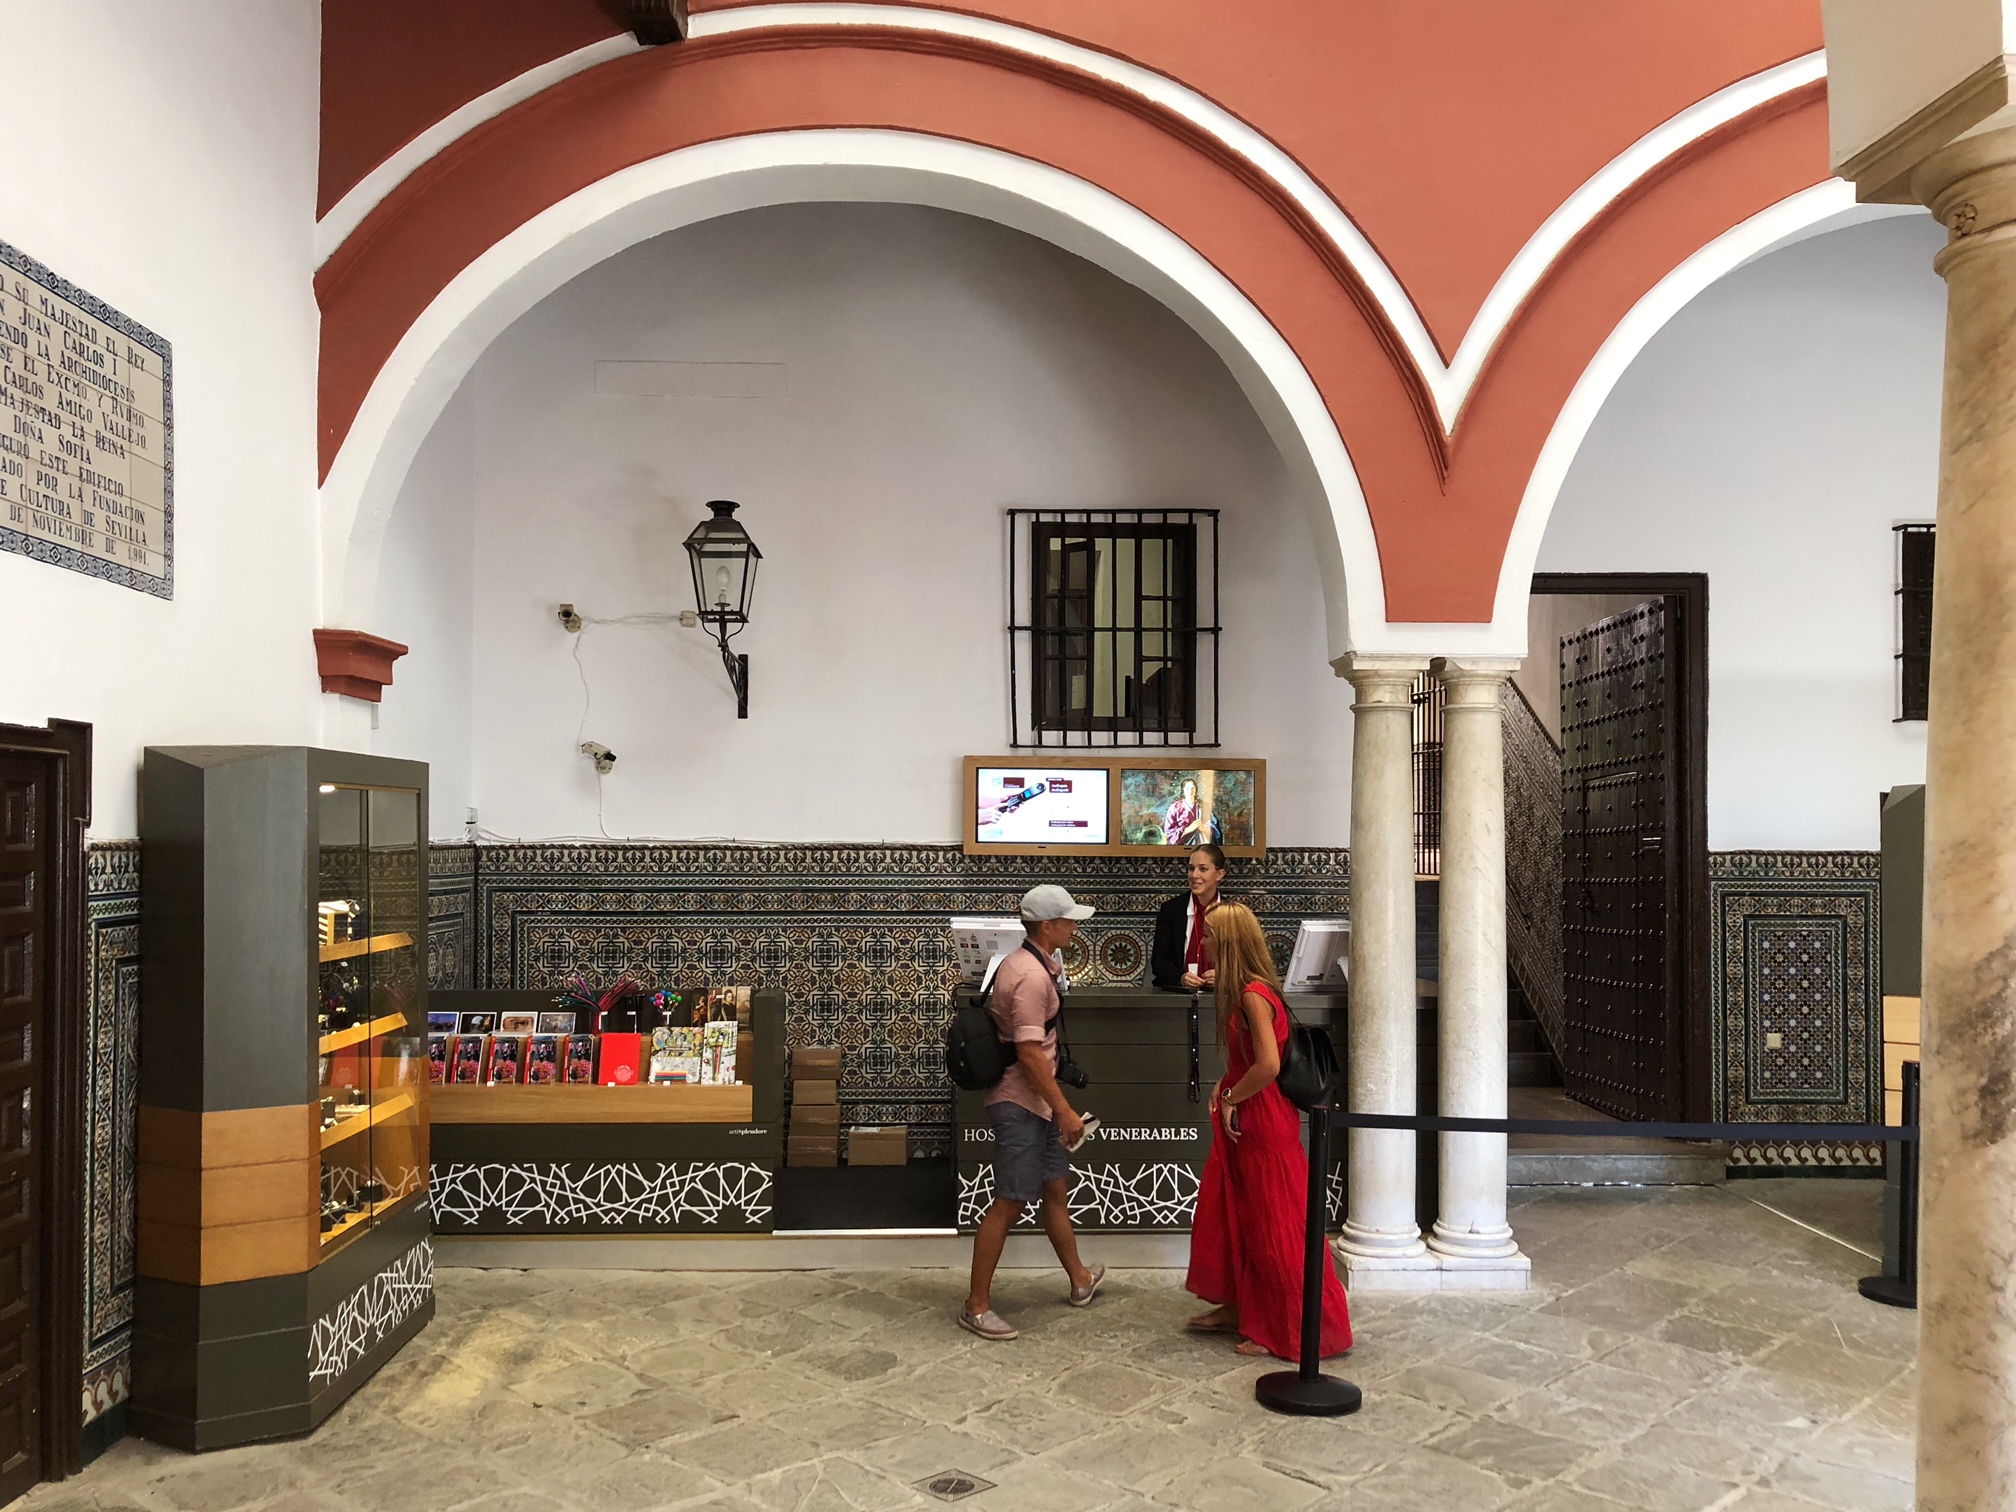 Tienda y recepción del visitante Hospital de los Venerables. Sevilla 2019